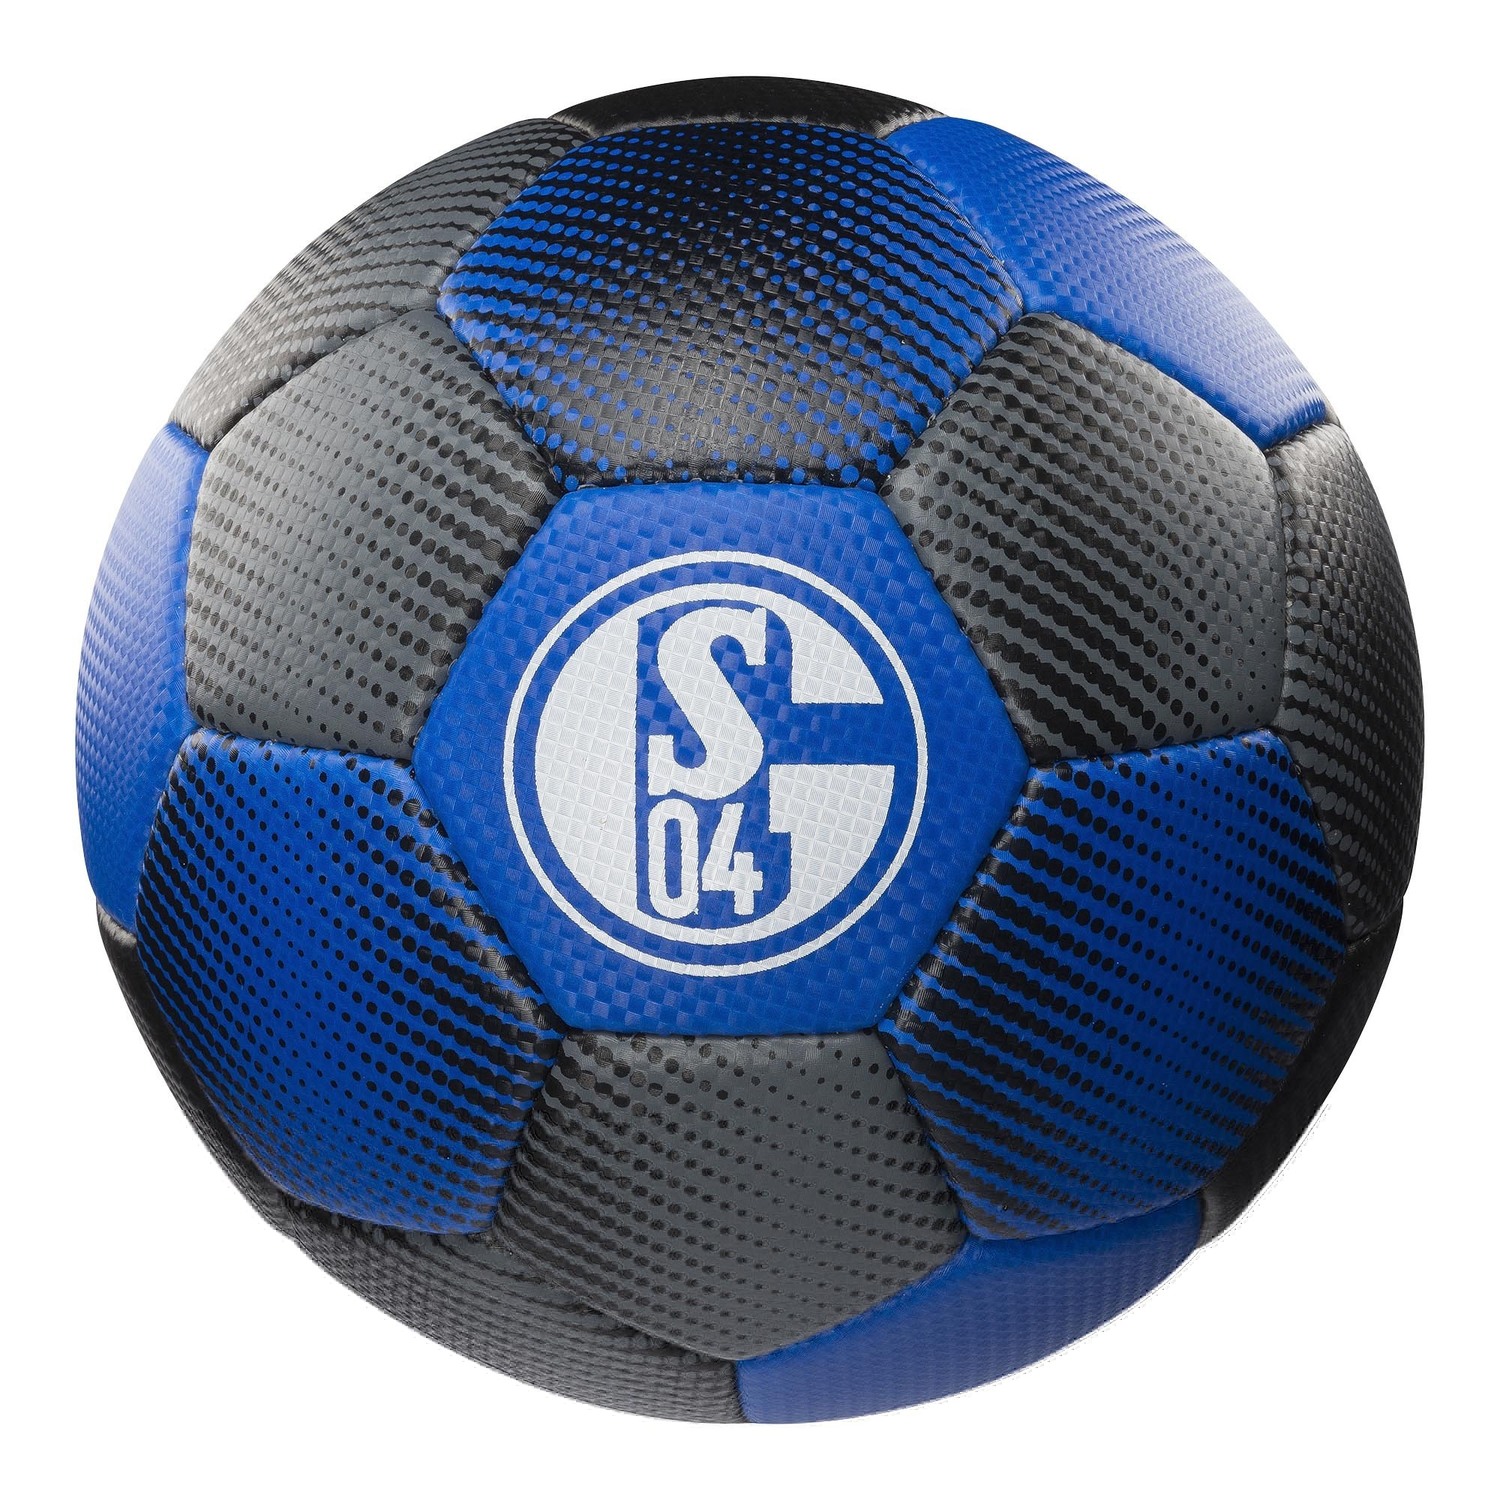 Fussball Schalke